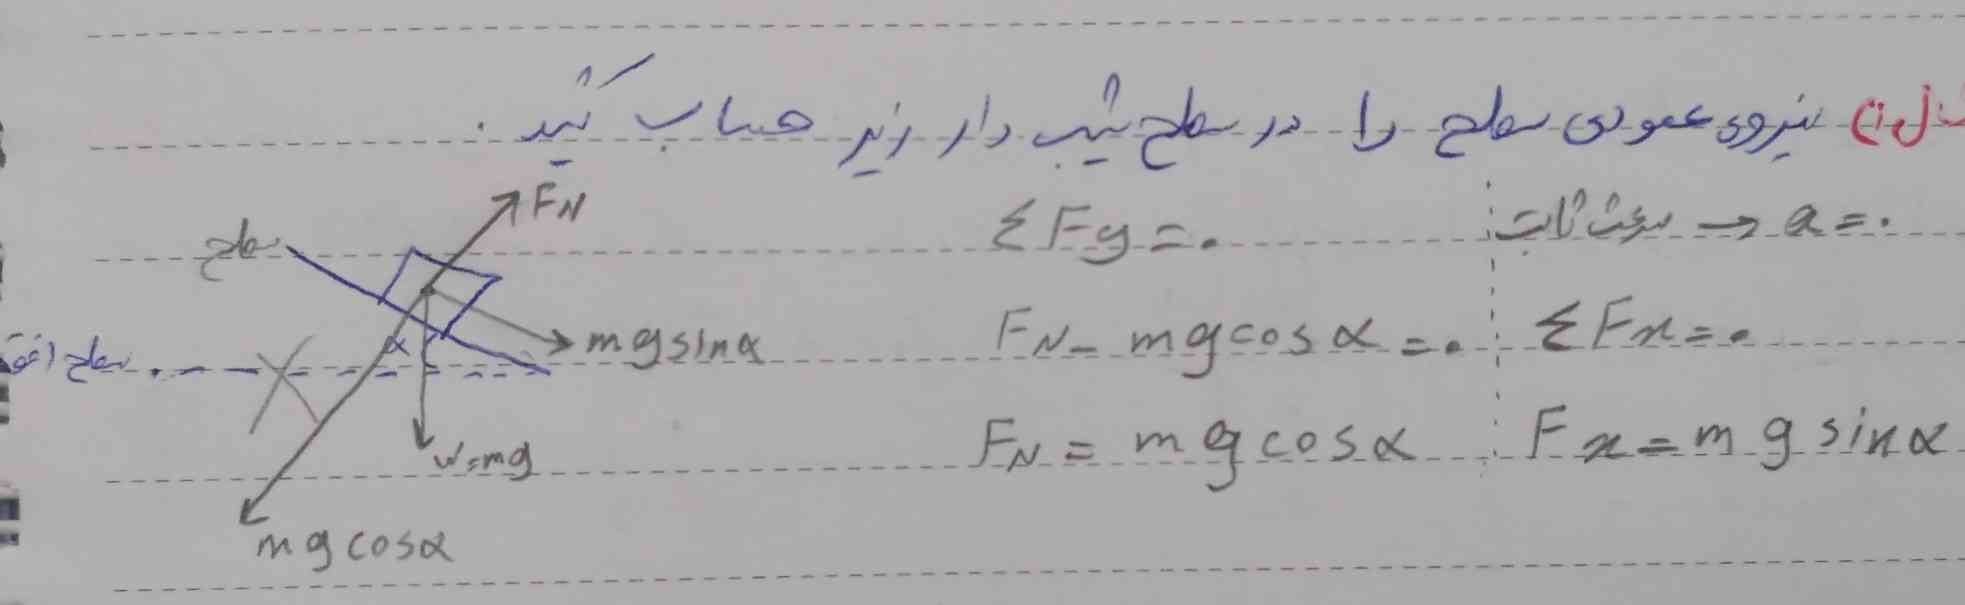  من متوجه این قسمت نشدم که چرا روبه‌روی الفا محور عرض رو زده mgcosa و محور طول رو نوشته mgsina ؟ در صورتی که باید جابه جا می‌نوشت!
میشه لطفا جواب این سوالمو بدین و توضیحش بدین برام؟🙏 
ممنون میشم🙏🌸